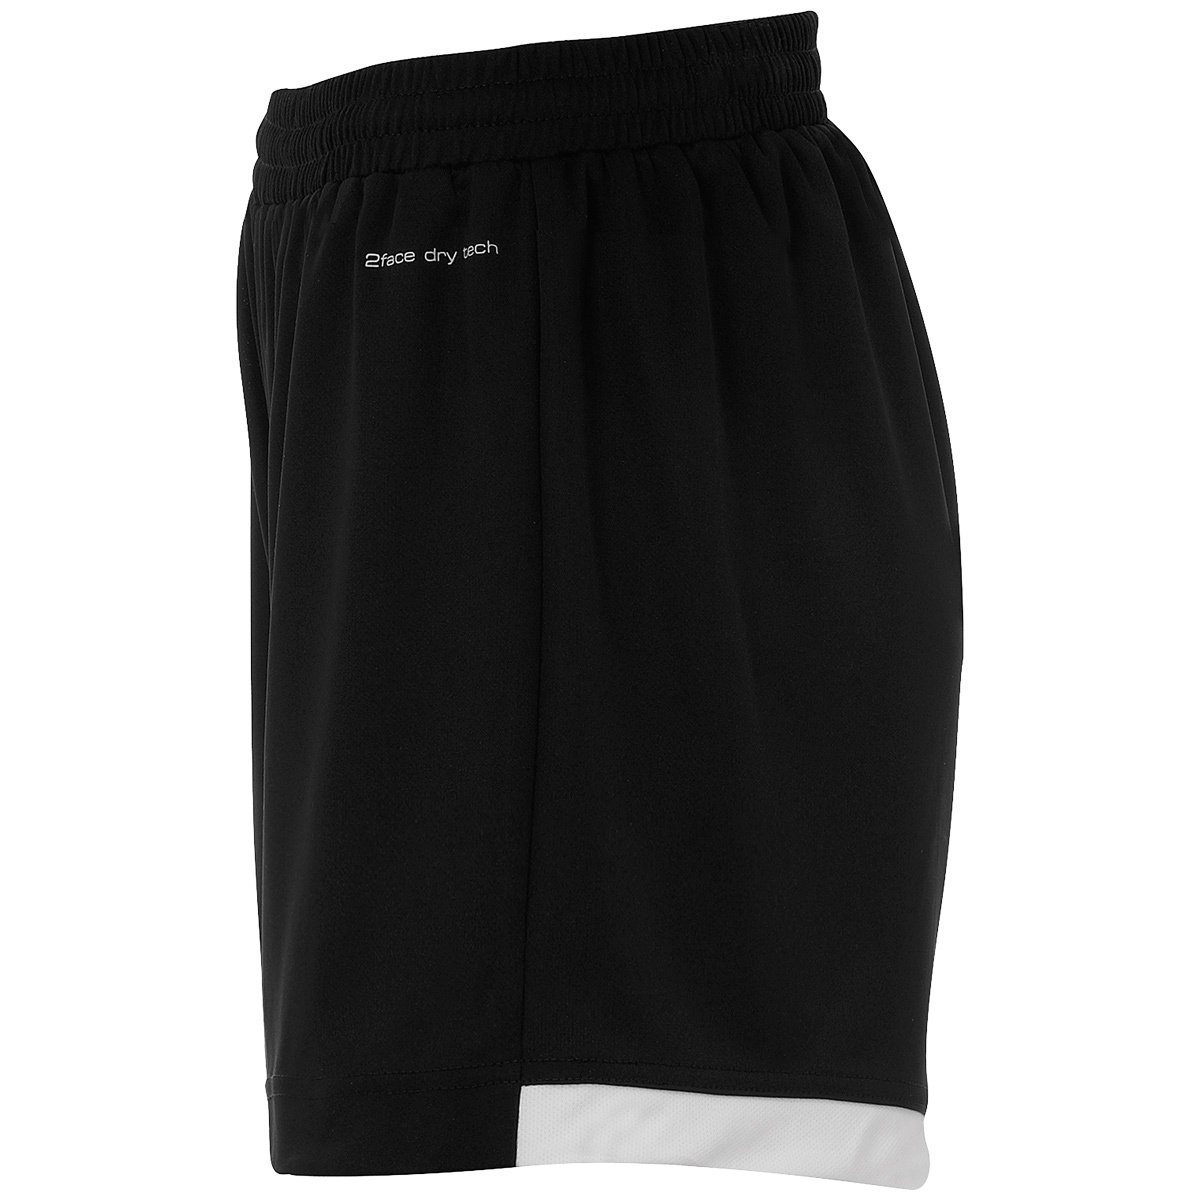 Kempa schwarz/weiß WOMEN PLAYER Kempa Shorts Shorts